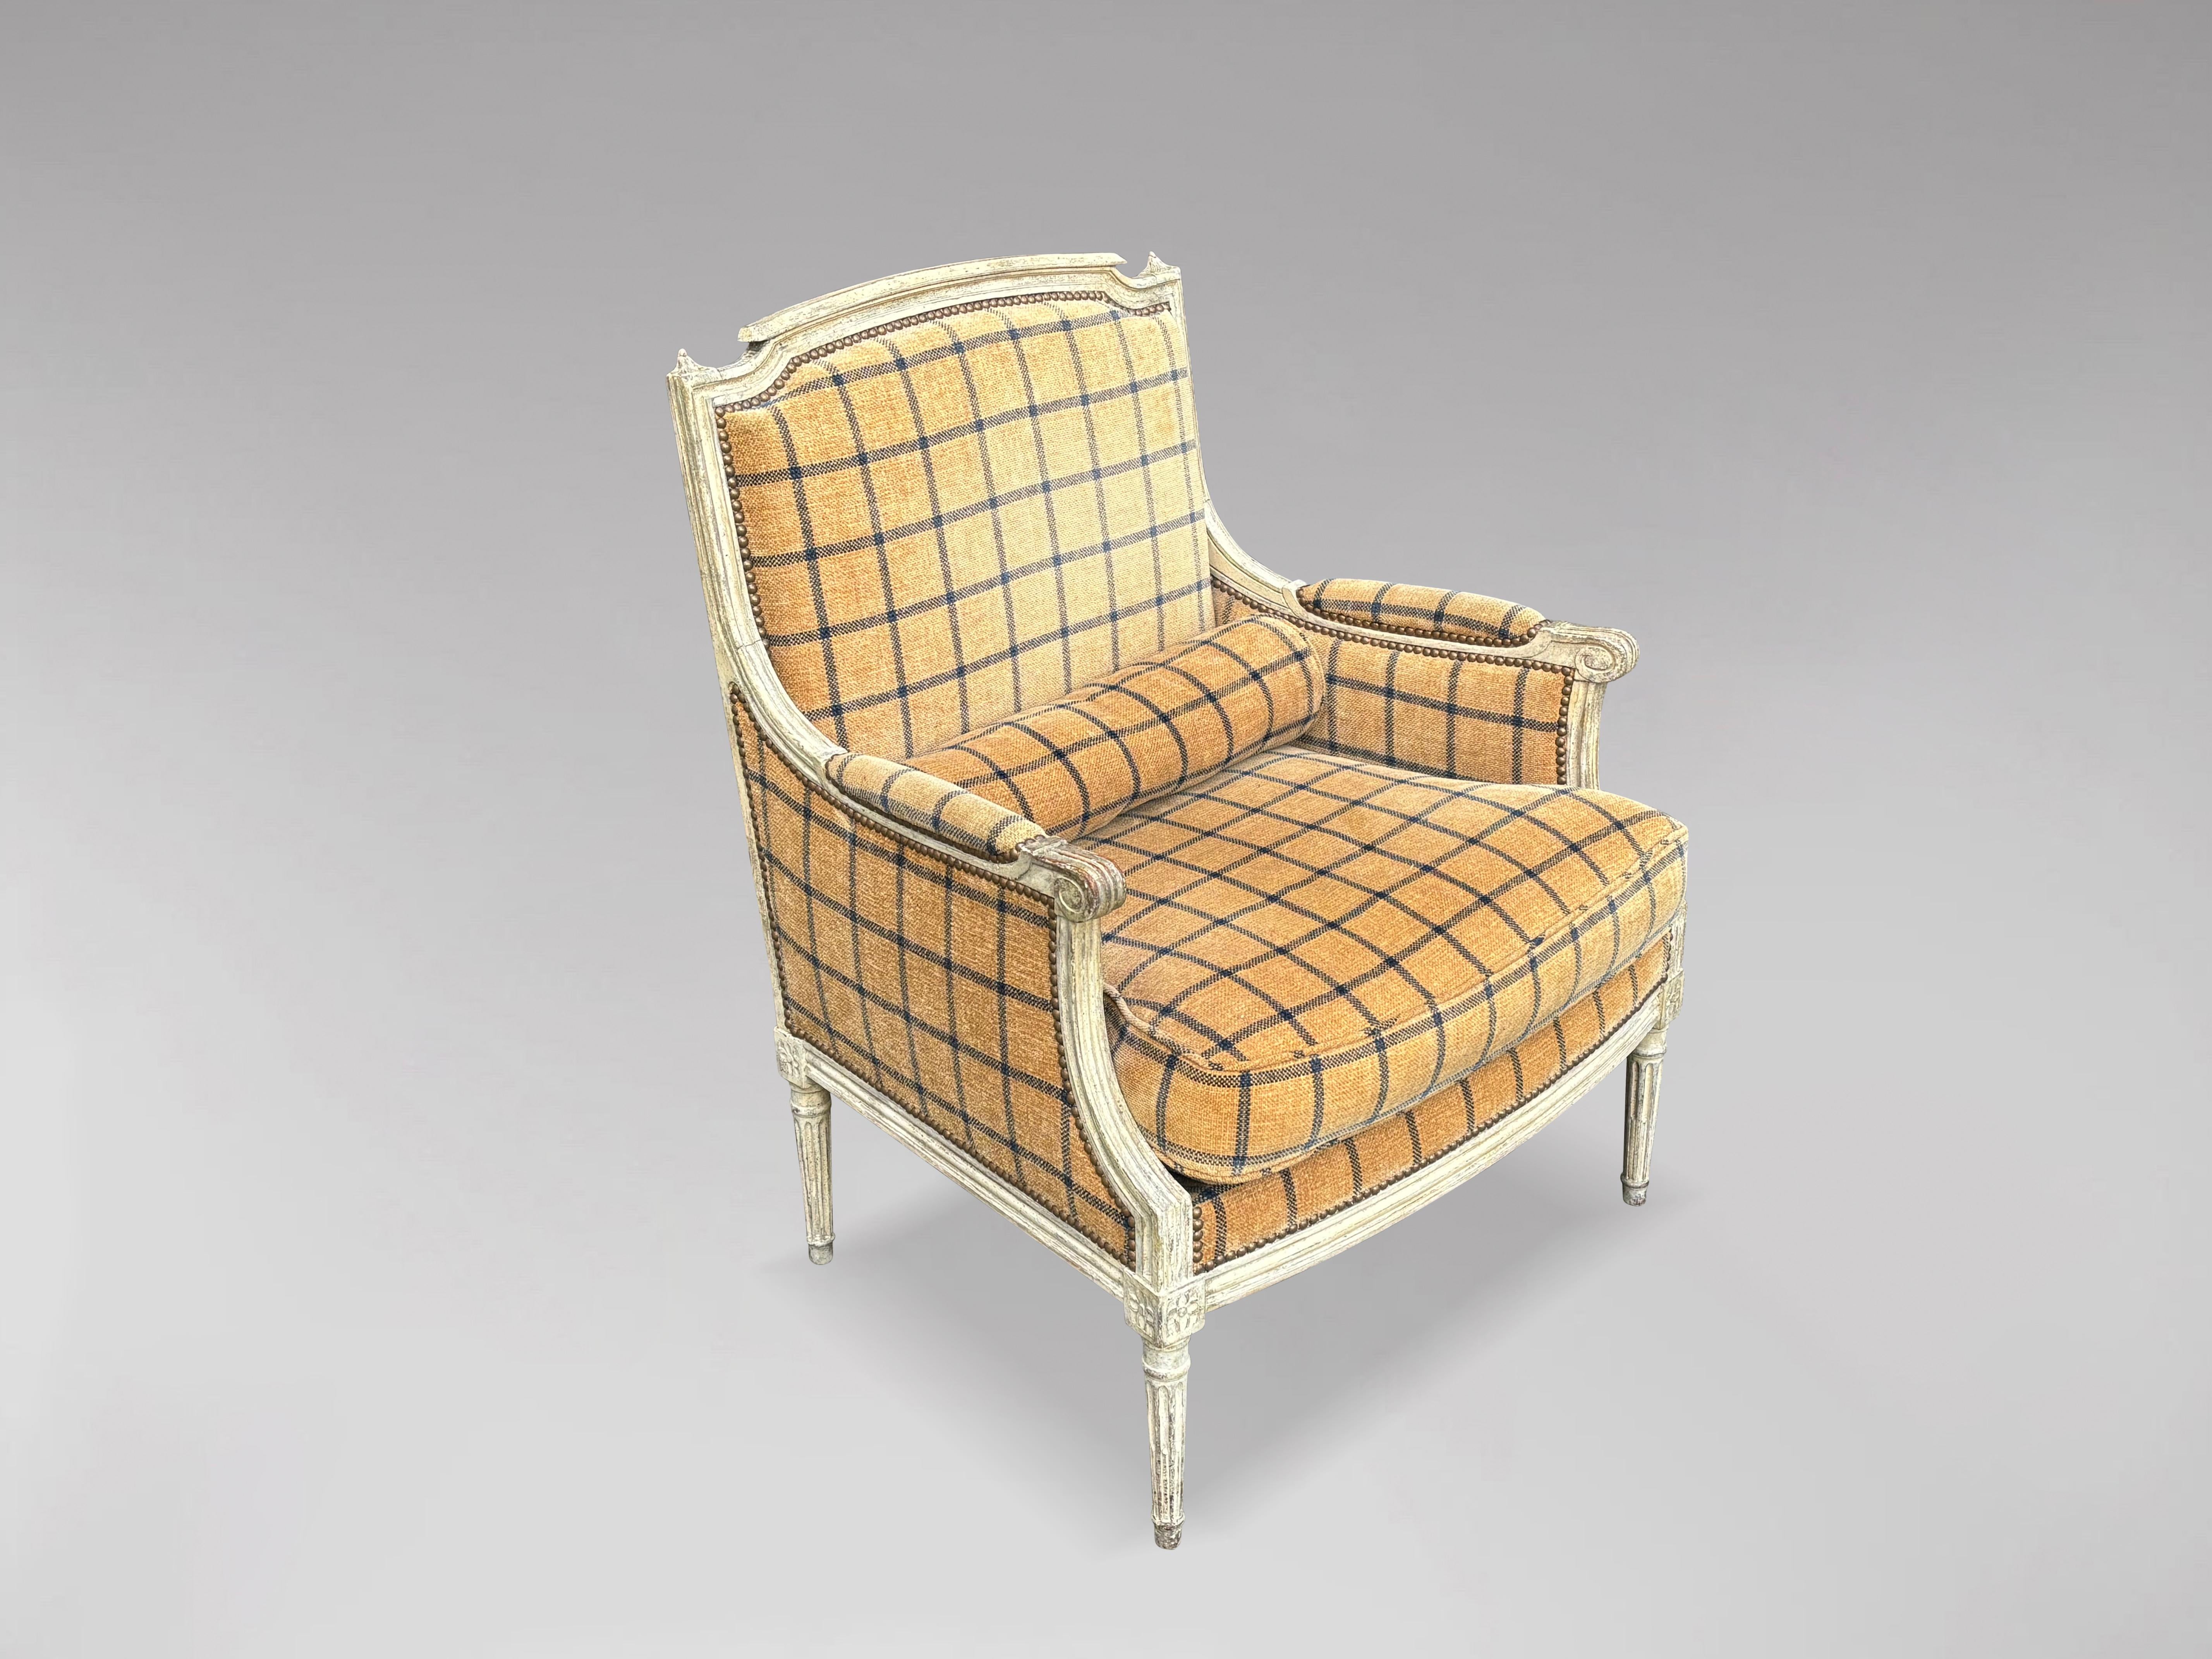 Französischer Sessel im Stil Louis XVI, geschnitzt und weiß bemalt, aus dem späten 19. Jahrhundert. Das geschnitzte, lackierte Gestell mit geformter Kammleiste, flankiert von geschnitzten Endstücken über der gepolsterten Rückenlehne, den